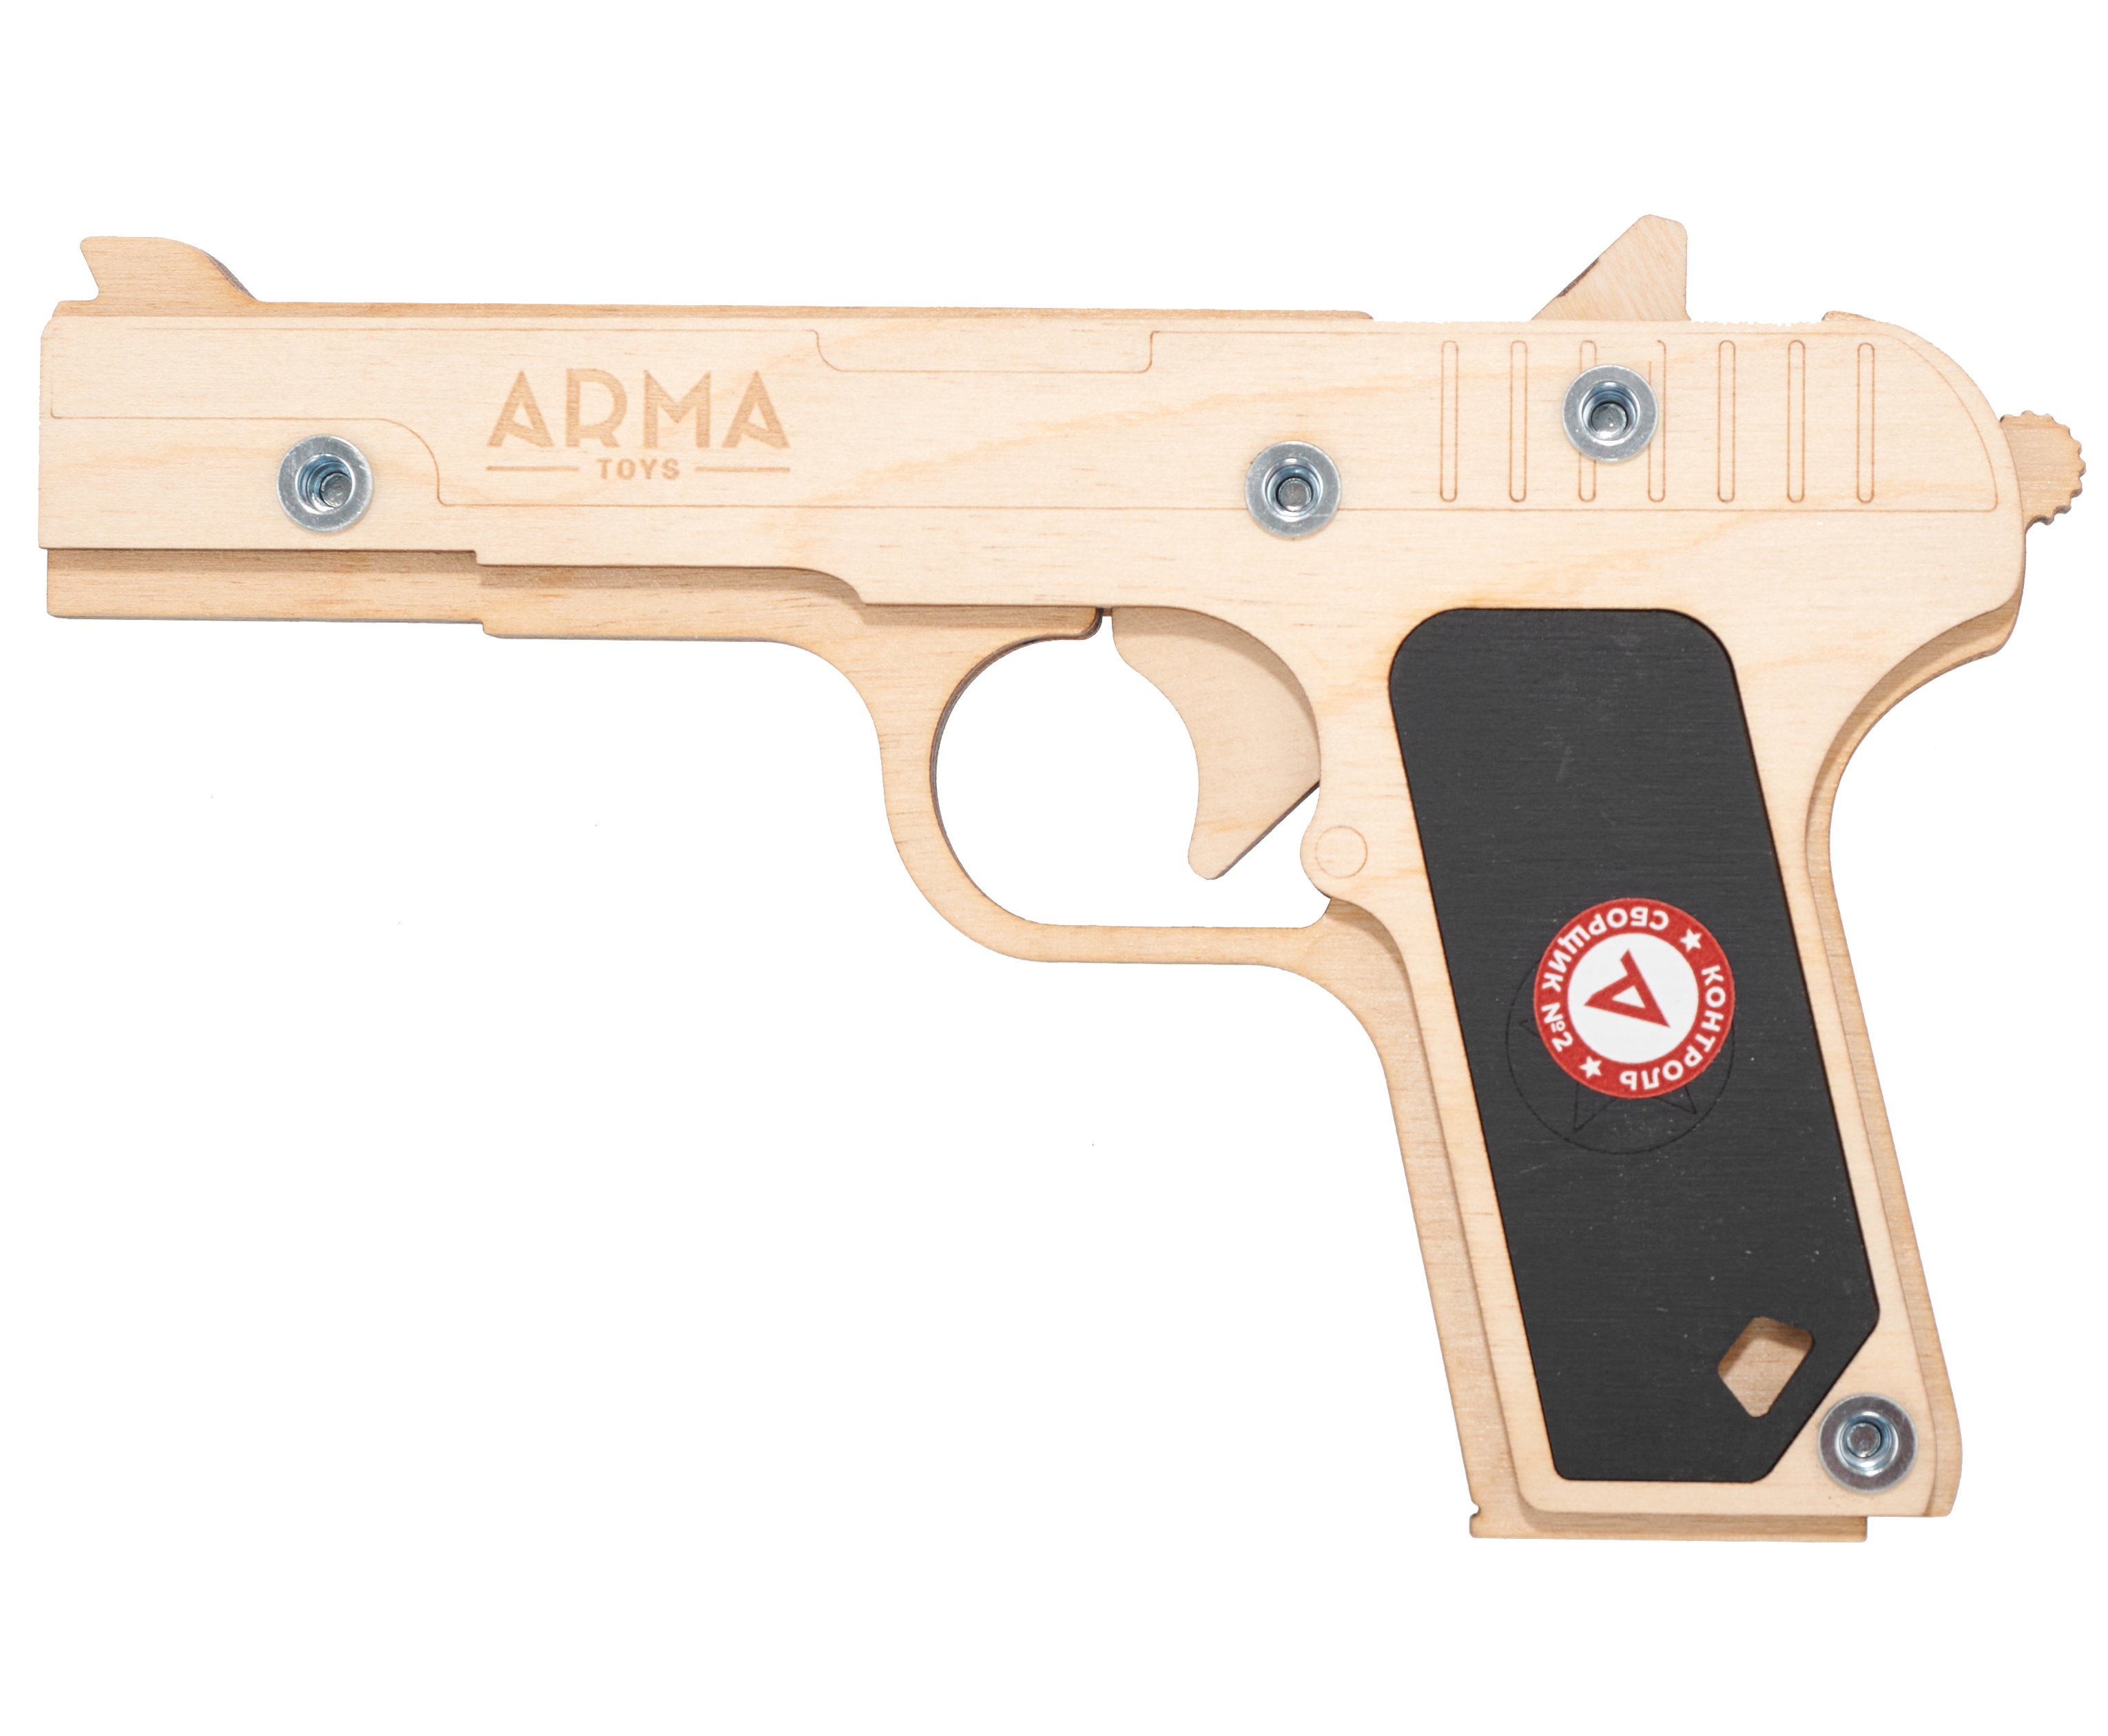 Резинкострел игрушечный Arma toys пистолет ТТ Компакт макет, Токарев, ATL002 резинкострел игрушечный arma toys пистолет макарова макет пм окрашенный at012k